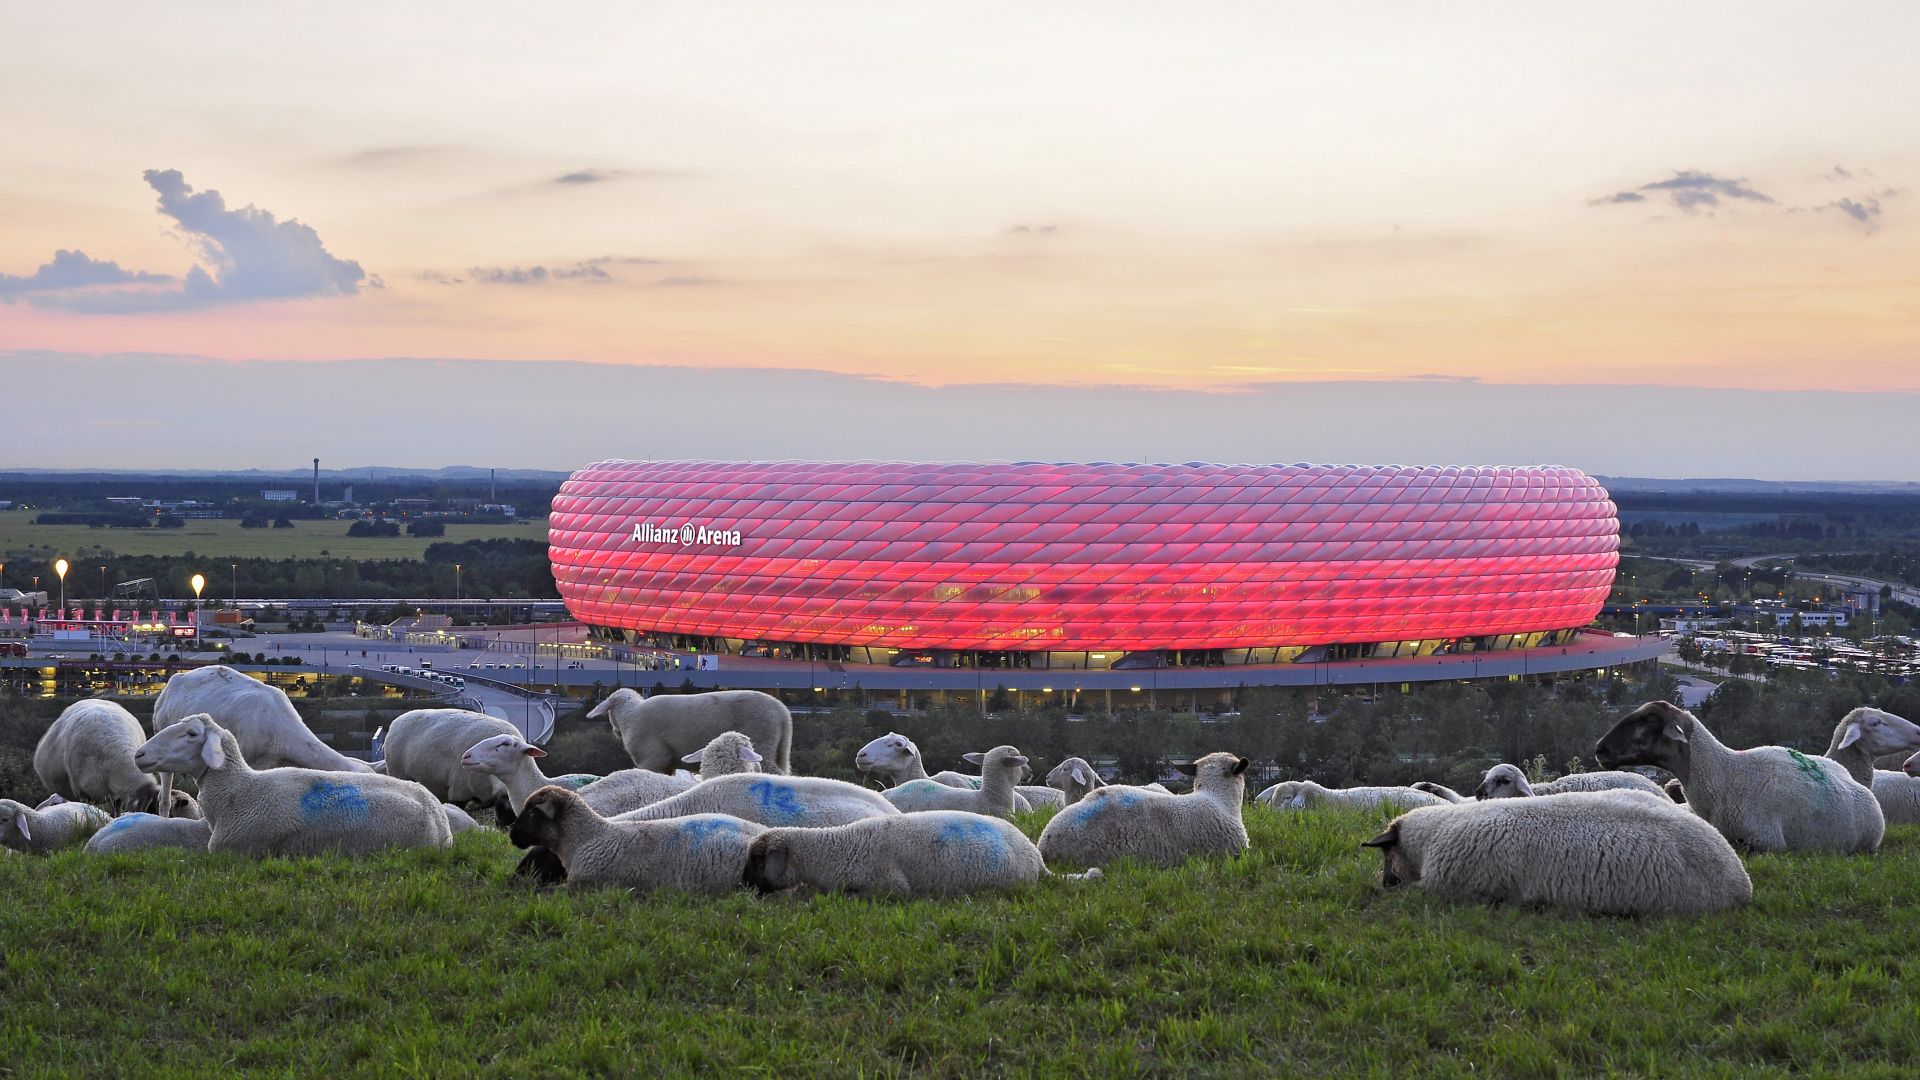 Munich: Allianz Arena, sheep in foreground